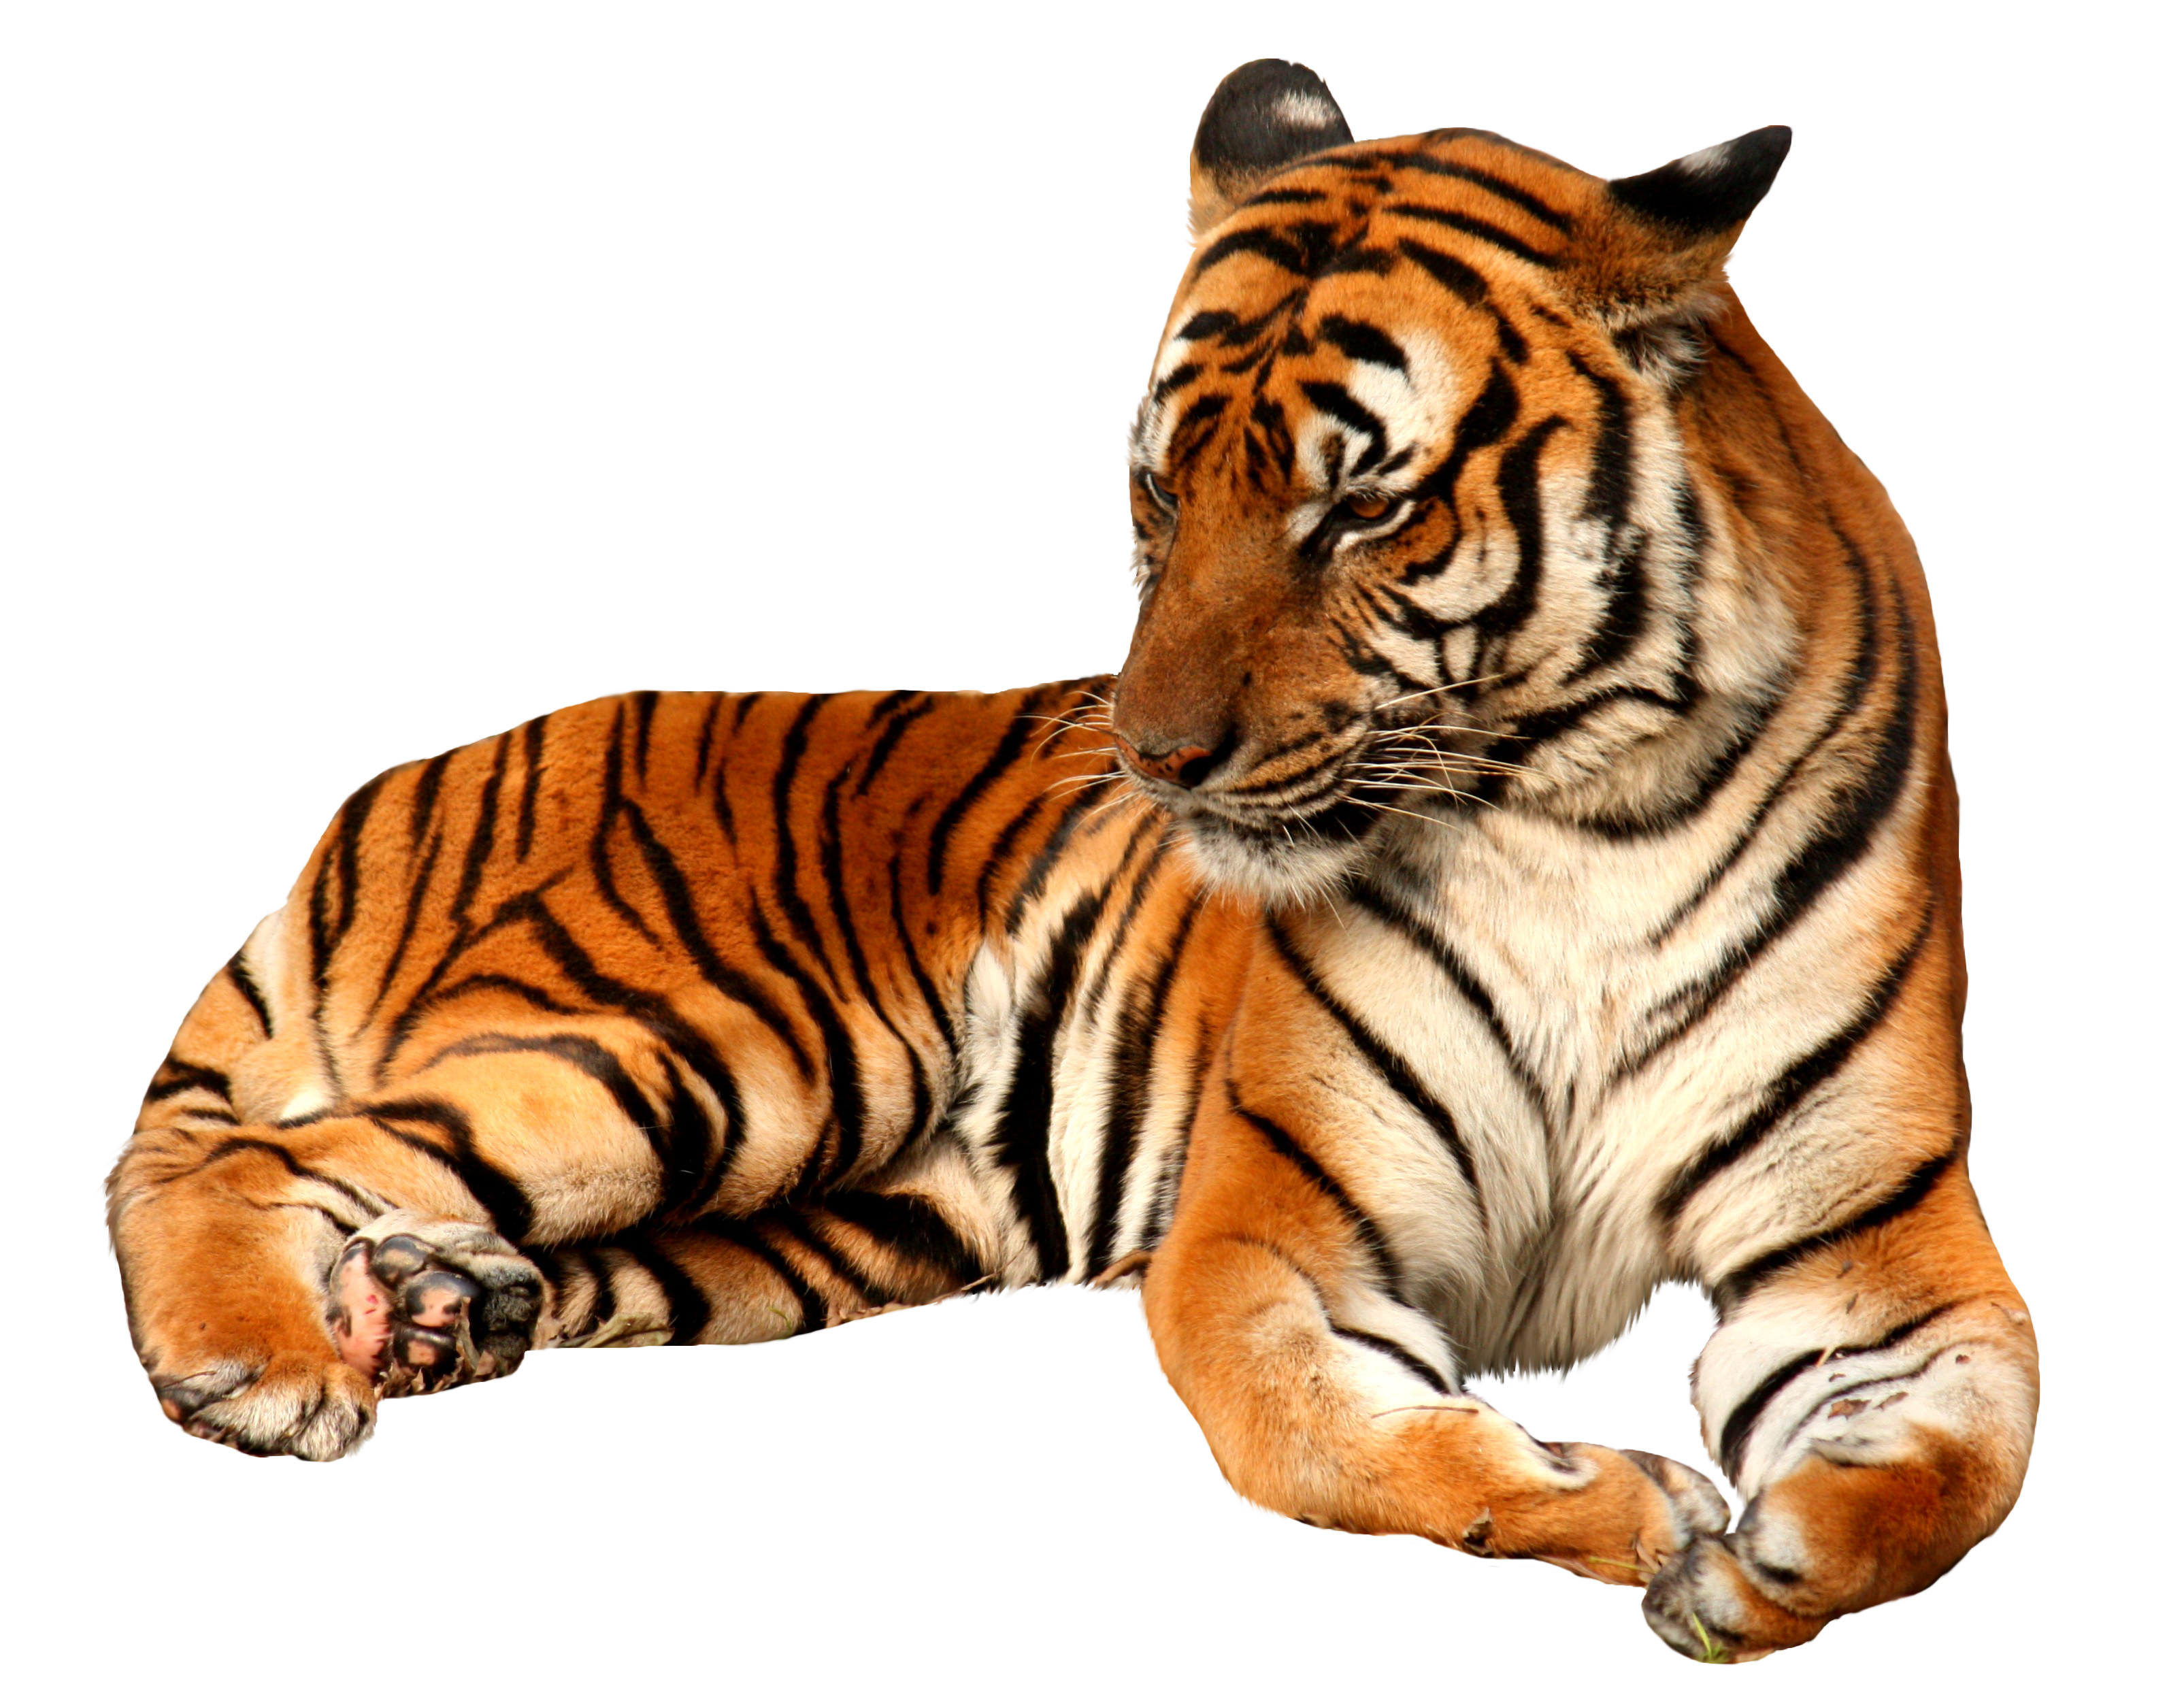 Tiger PNG image free Download